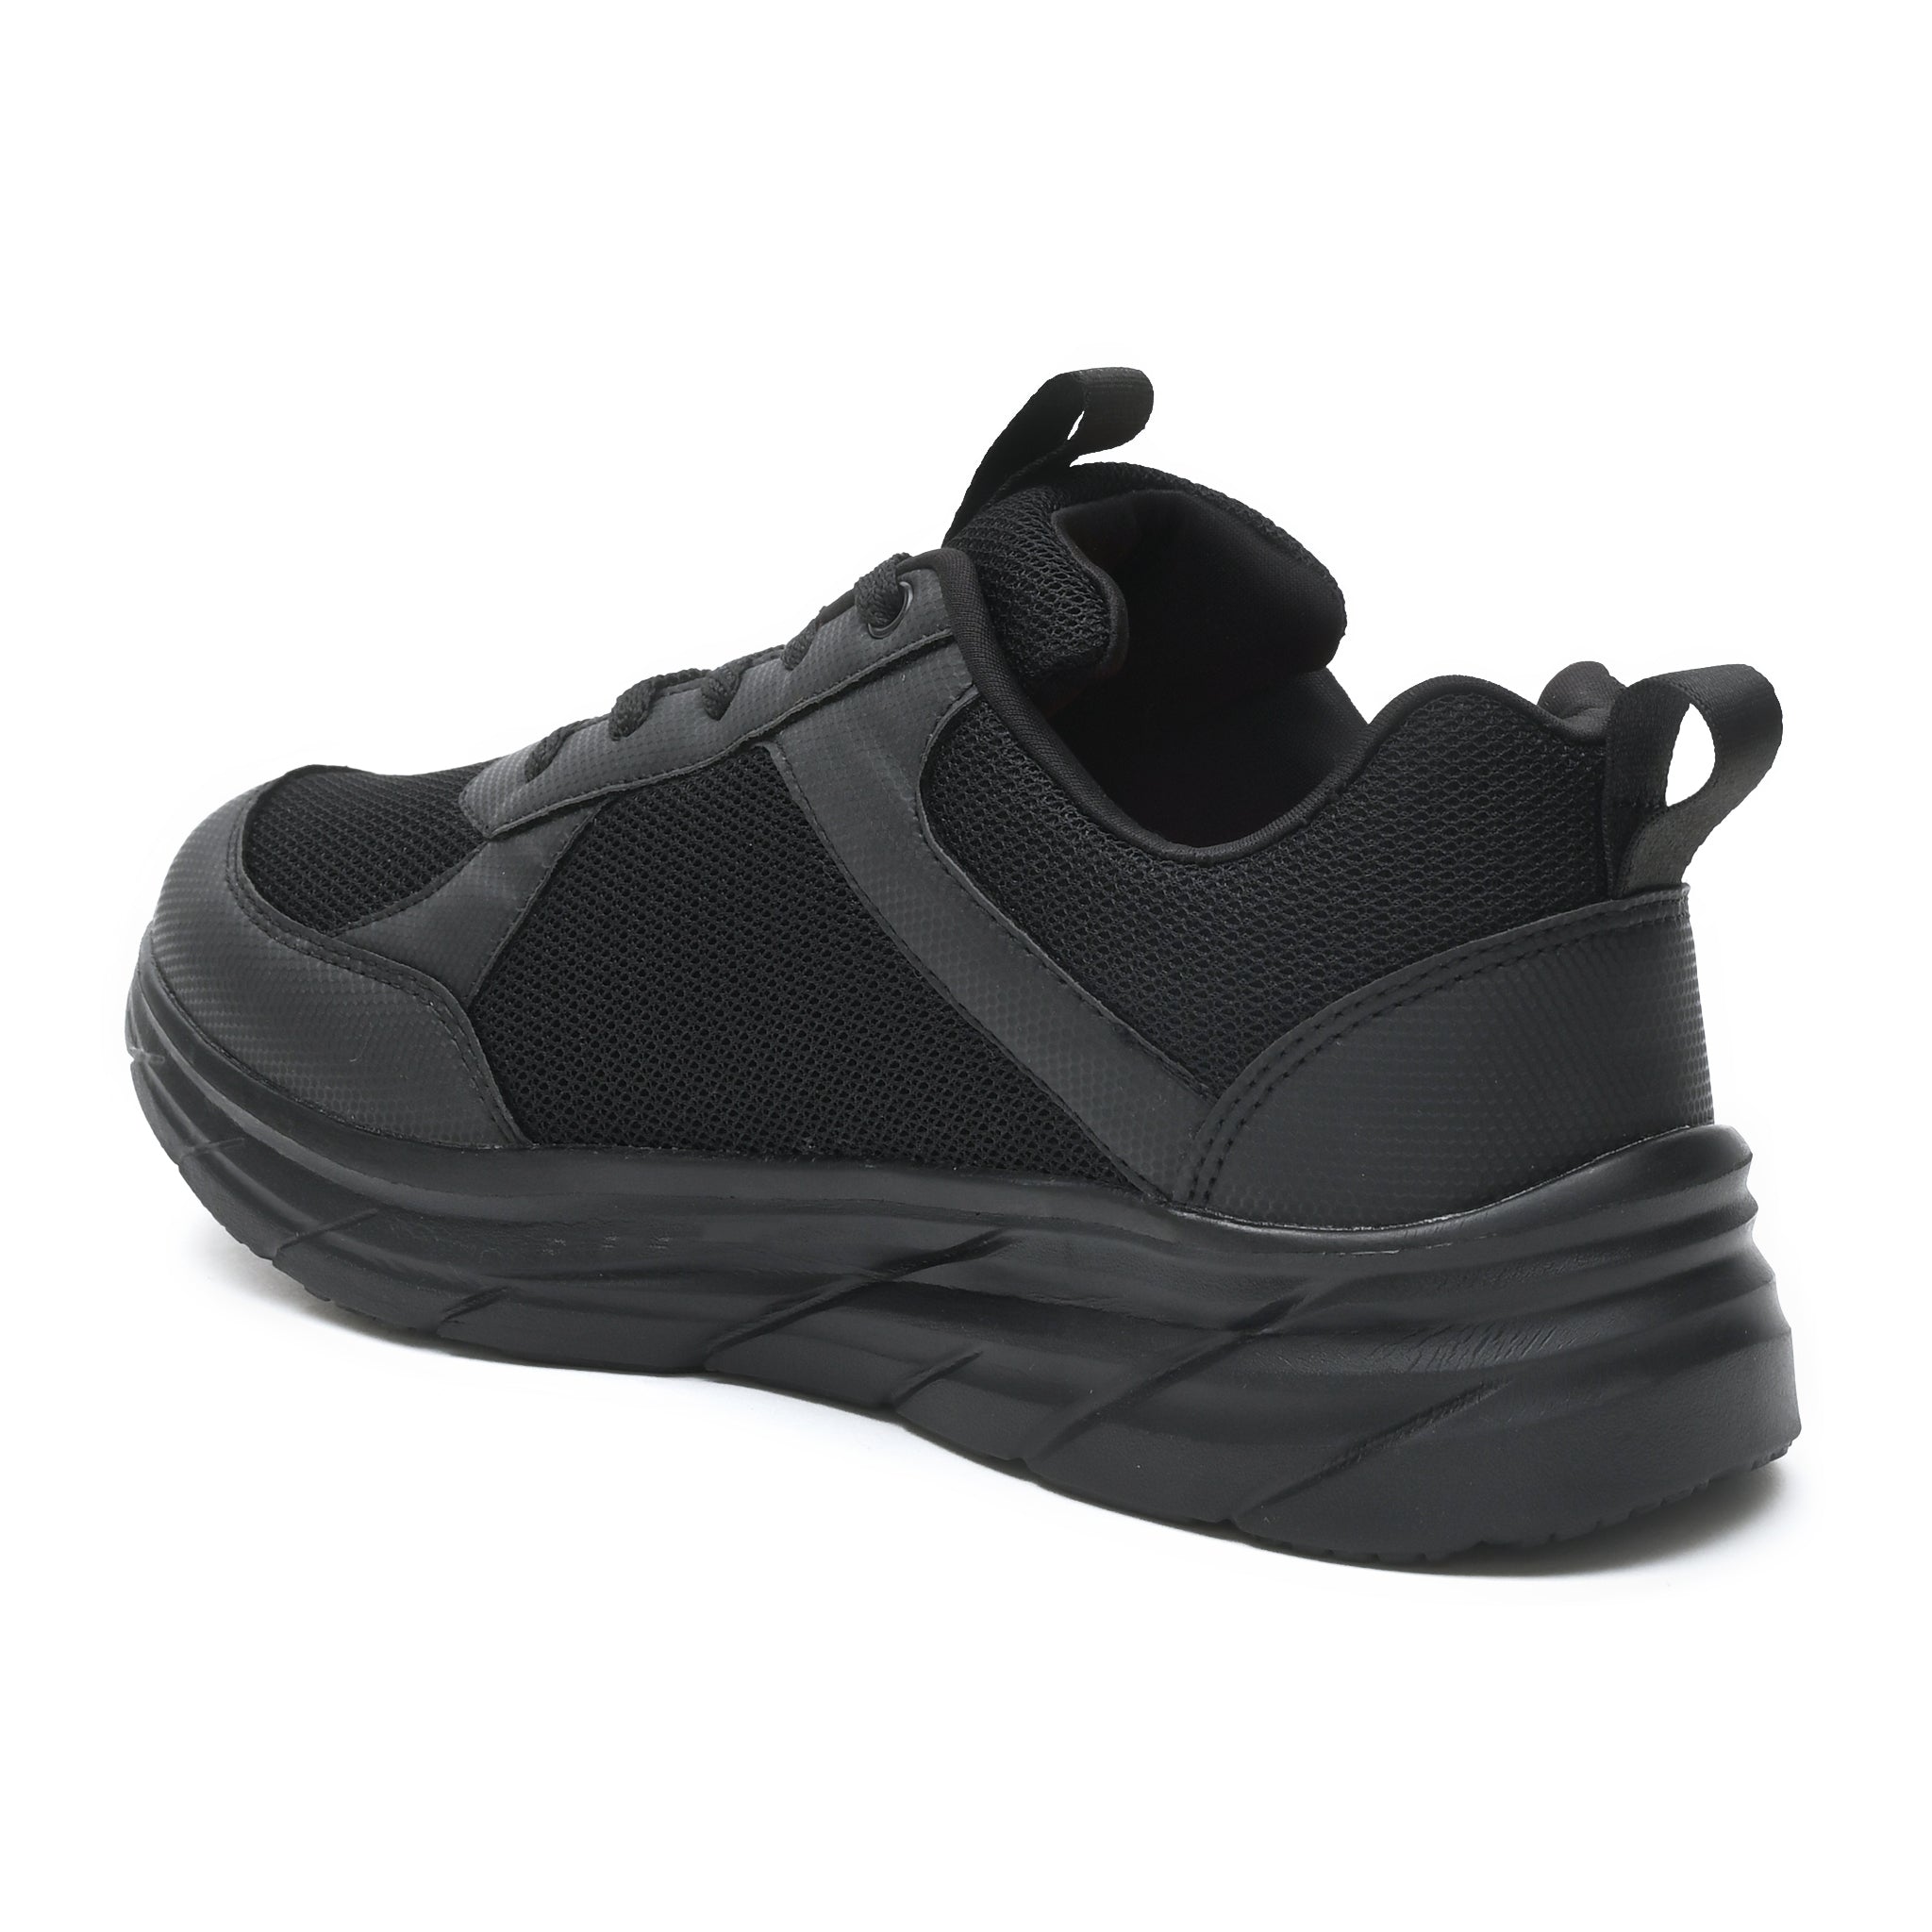 Impakto Urbanite Men's Black Running Shoes